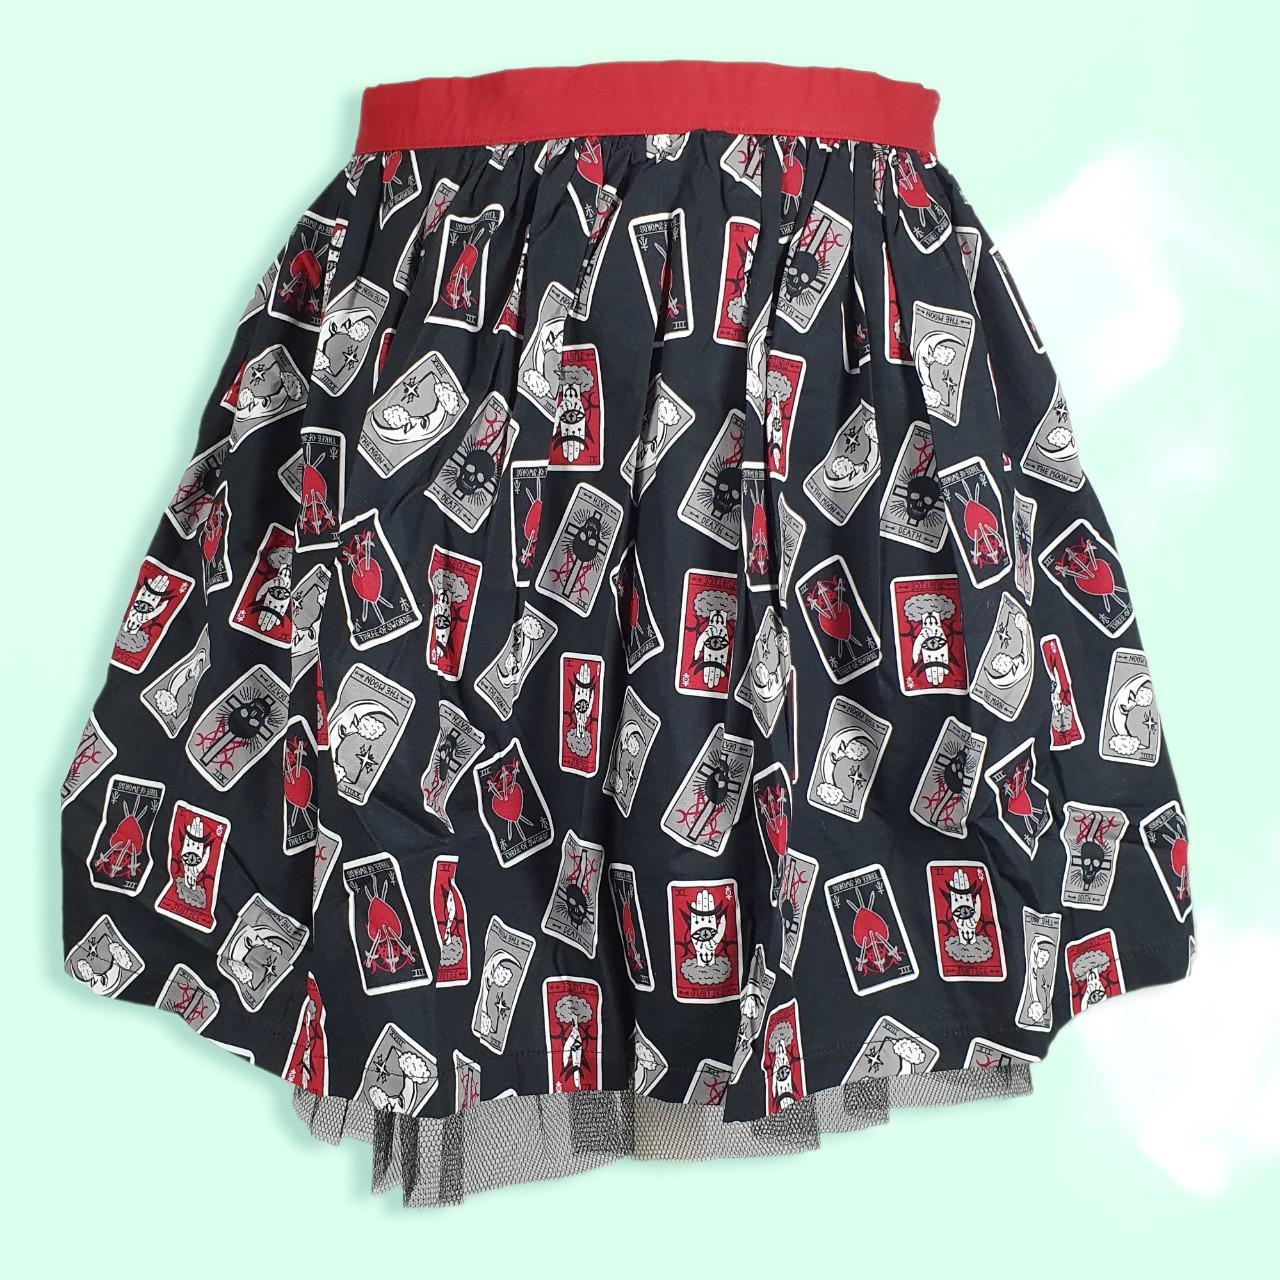 Product Image 1 - .
💀❤️Tarot Cards Tutu Skirt ❤️💀

💀